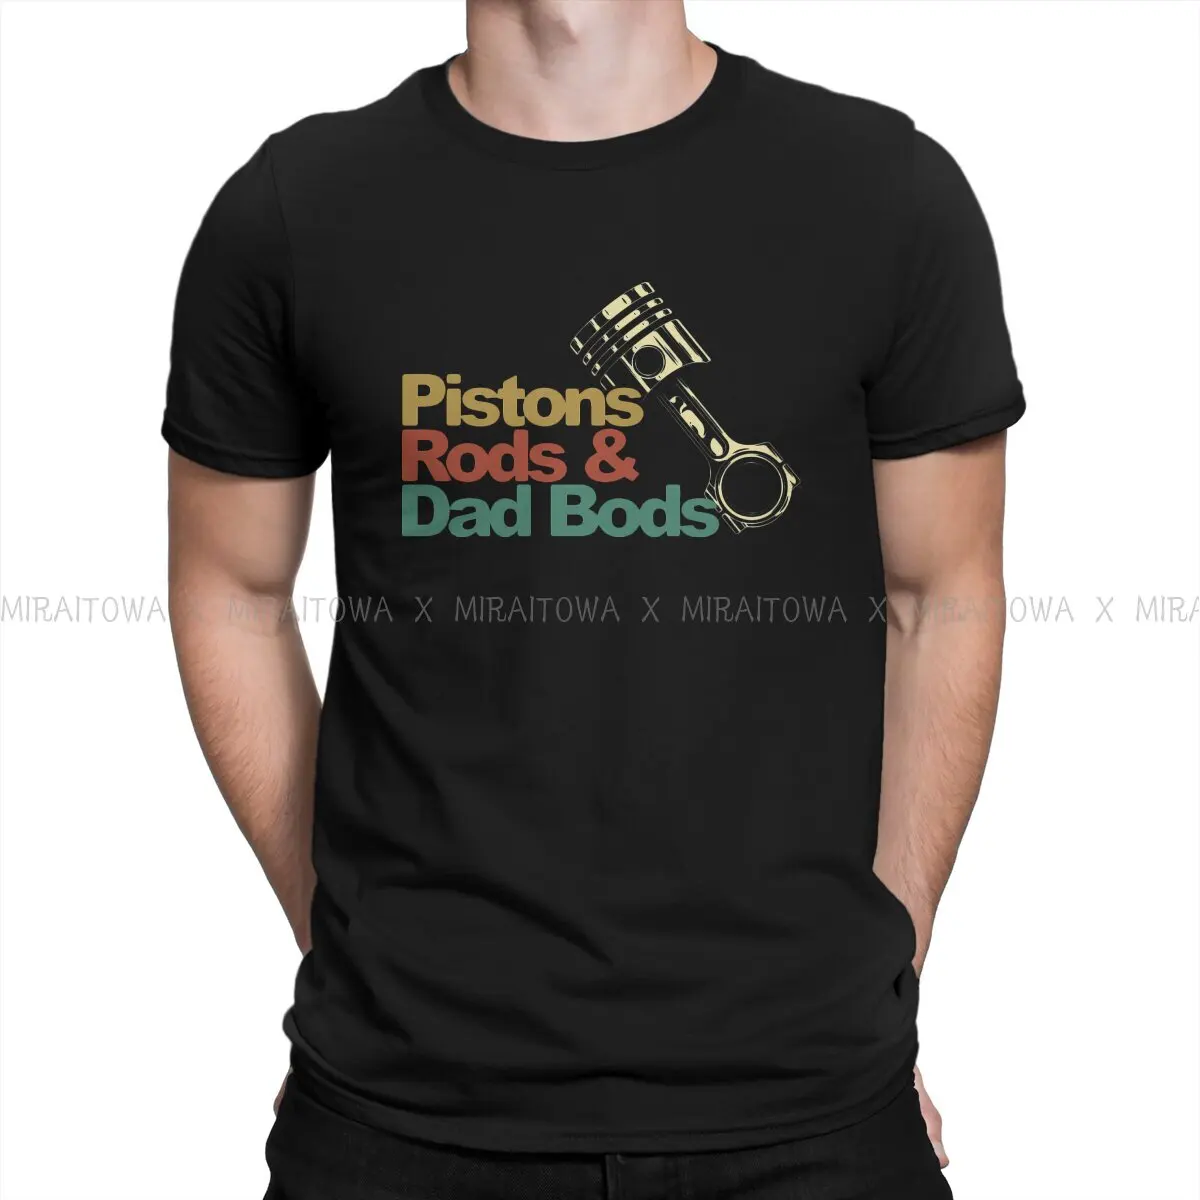 

Шток поршня и папа Bods Специальная футболка мем высшего качества новый дизайн подарочная одежда футболка горячая Распродажа